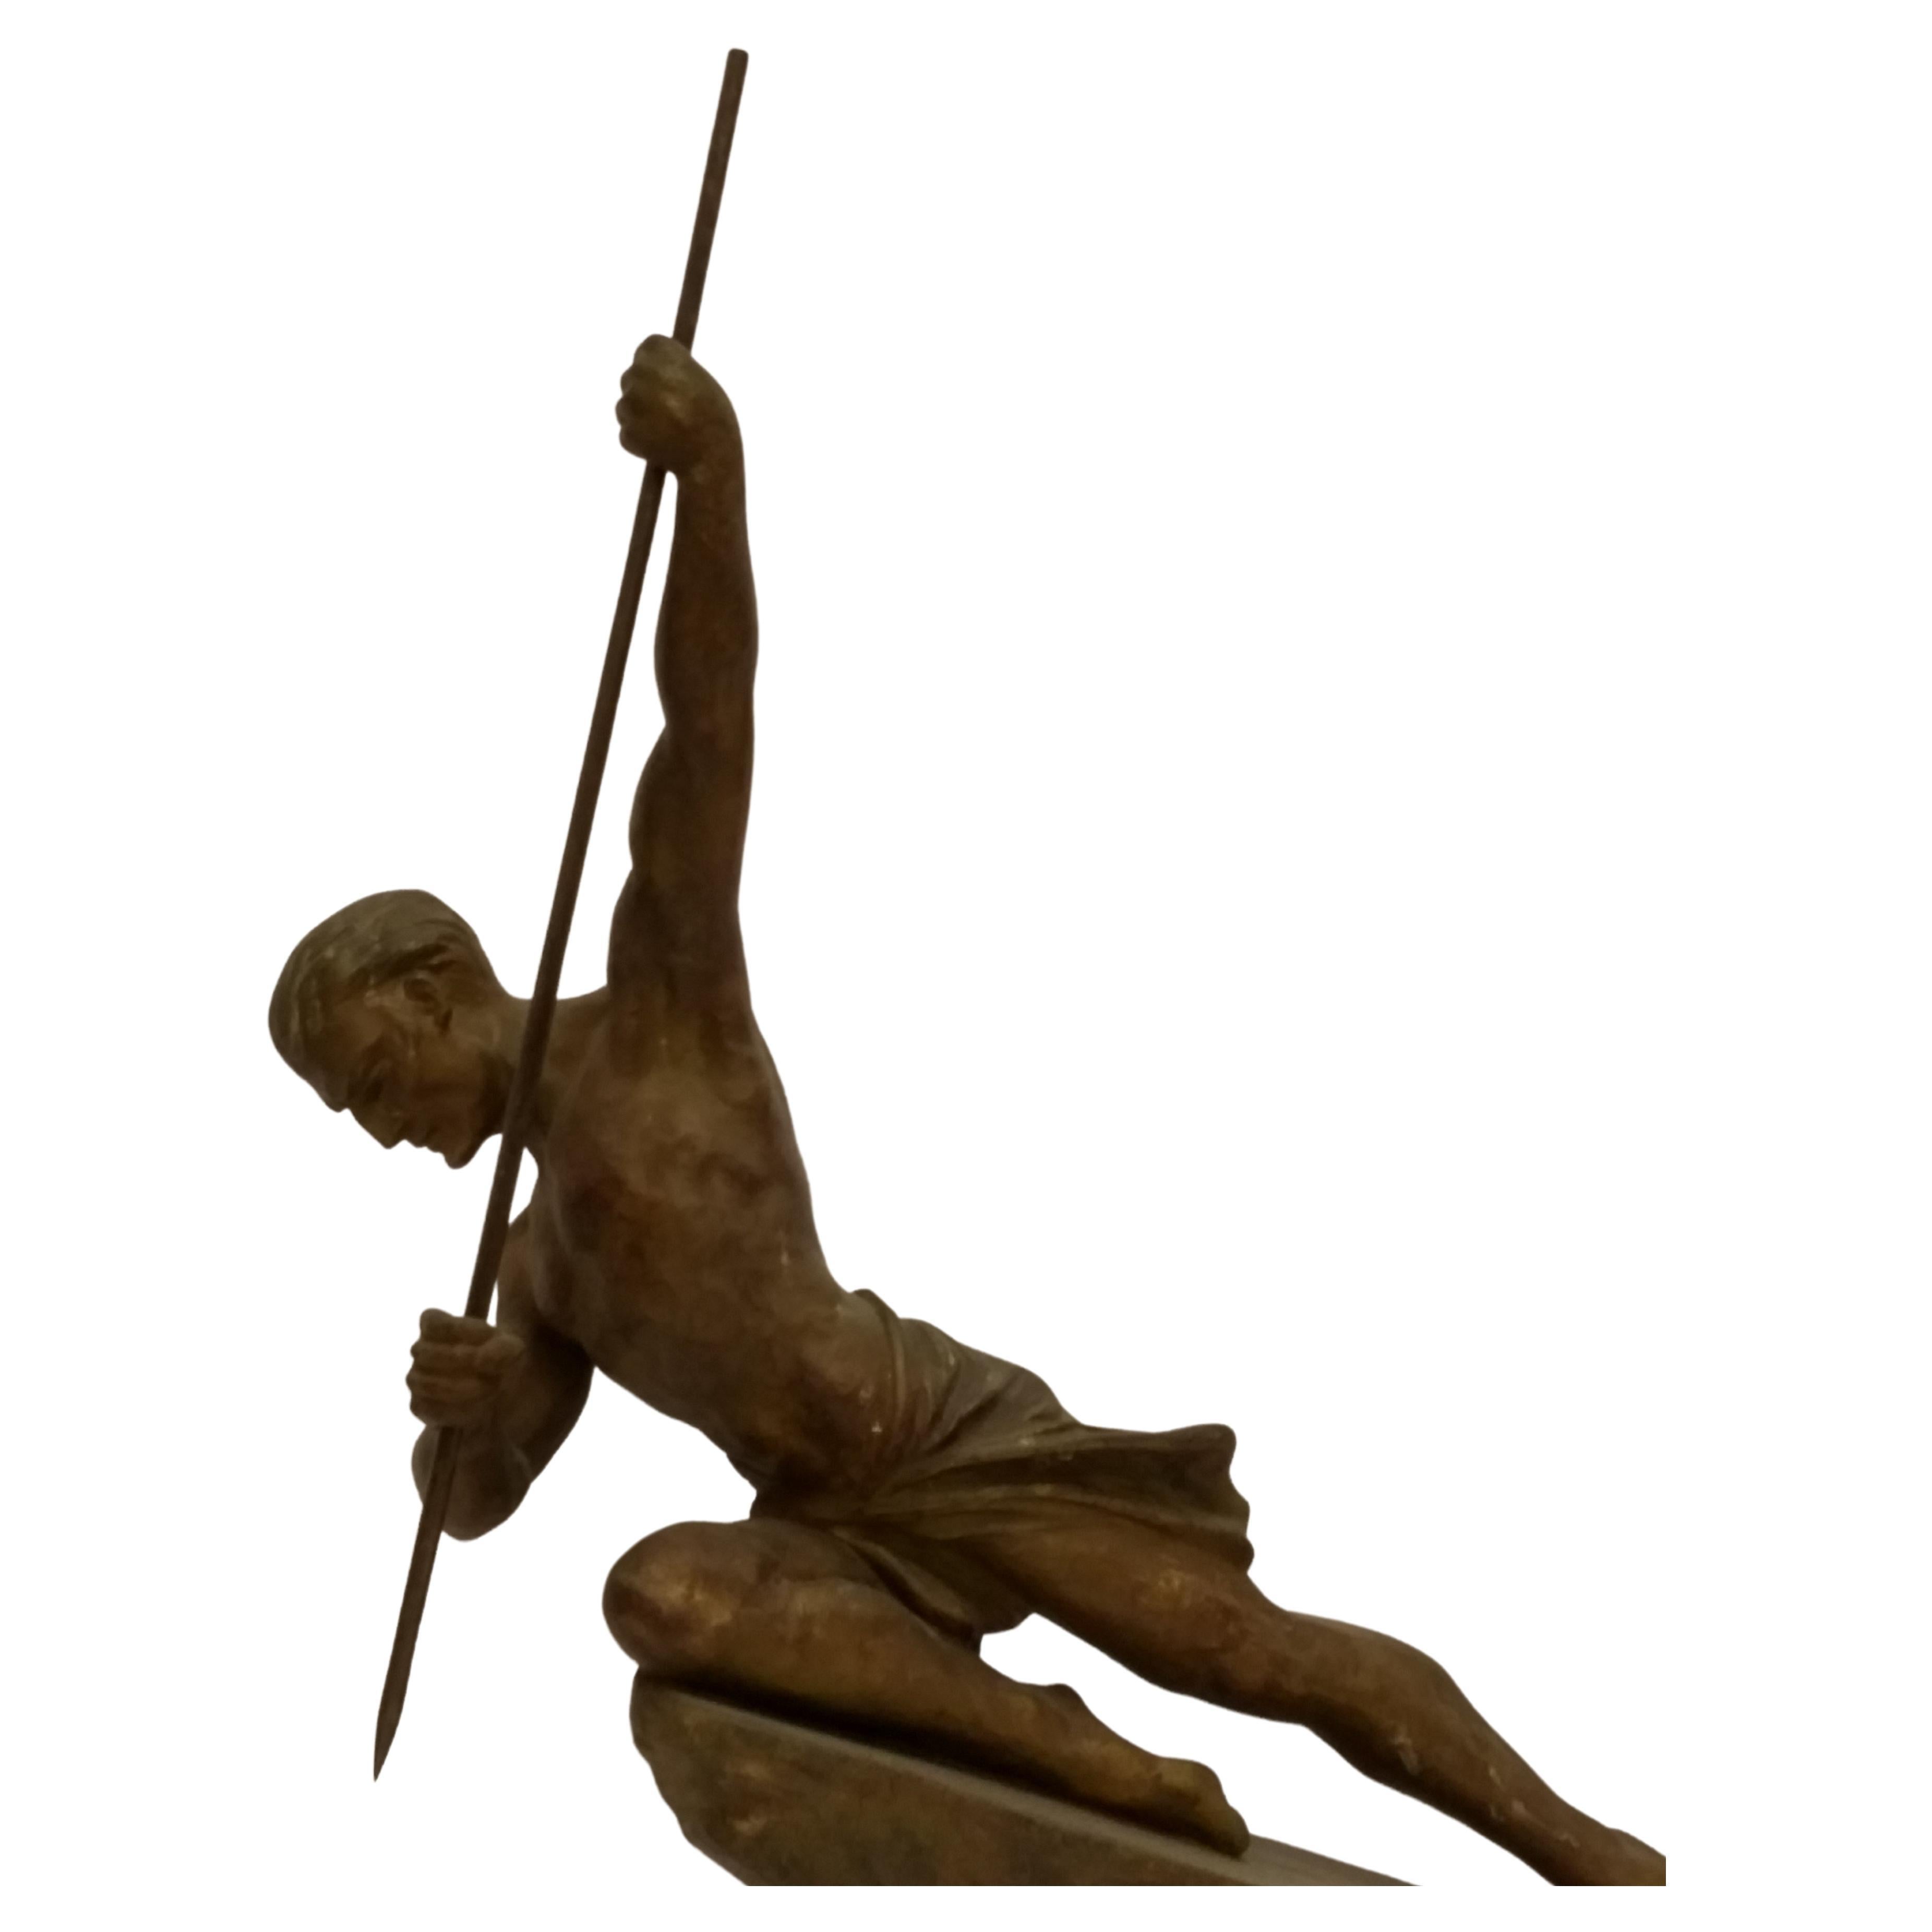 Sculpture de chasseur à la lance de l'Art déco français en patine verte et dorée par l'artiste français R&R Varnier. En très bon état, avec une usure modeste correspondant à l'âge. Nous sommes la rare source spécialisée dans l'Art Déco français